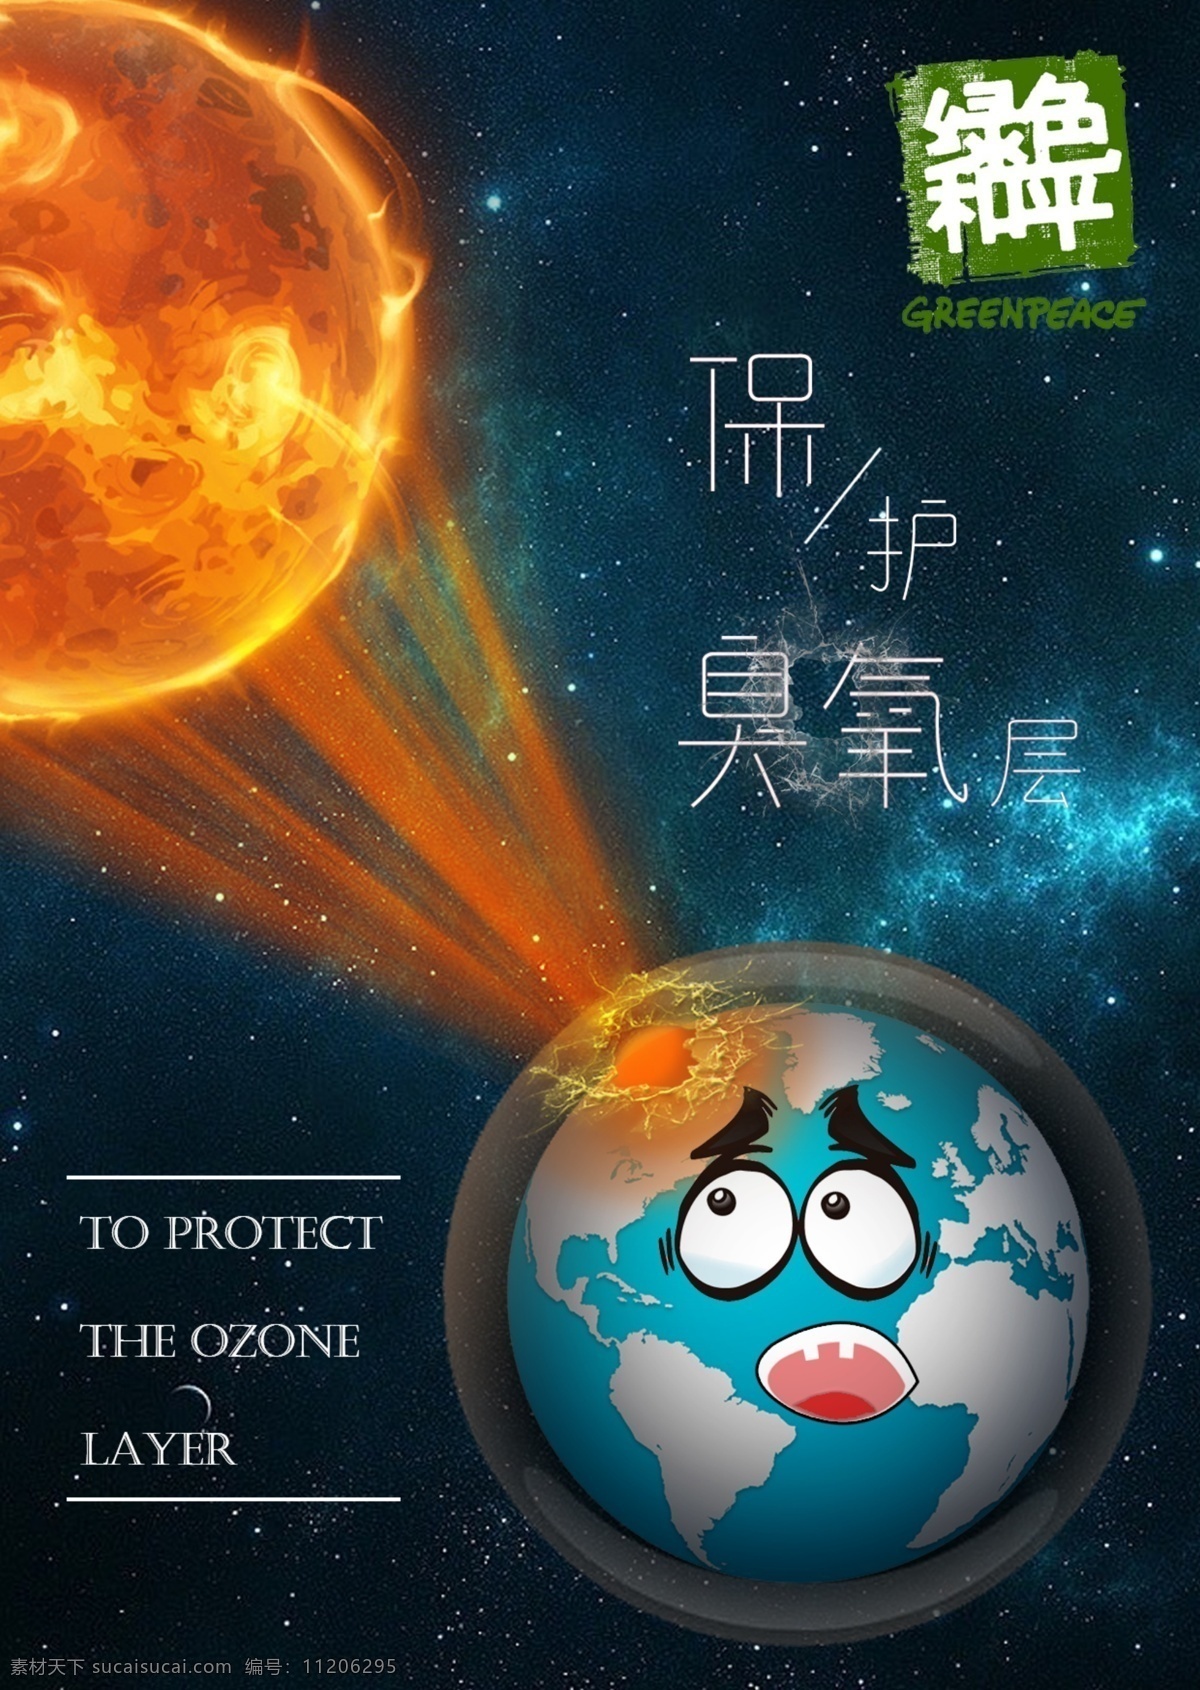 臭氧层 保护地球 保护臭氧层 地球 绿色和平 光线 太阳光线 火球 玻璃质感 破裂 透明玻璃